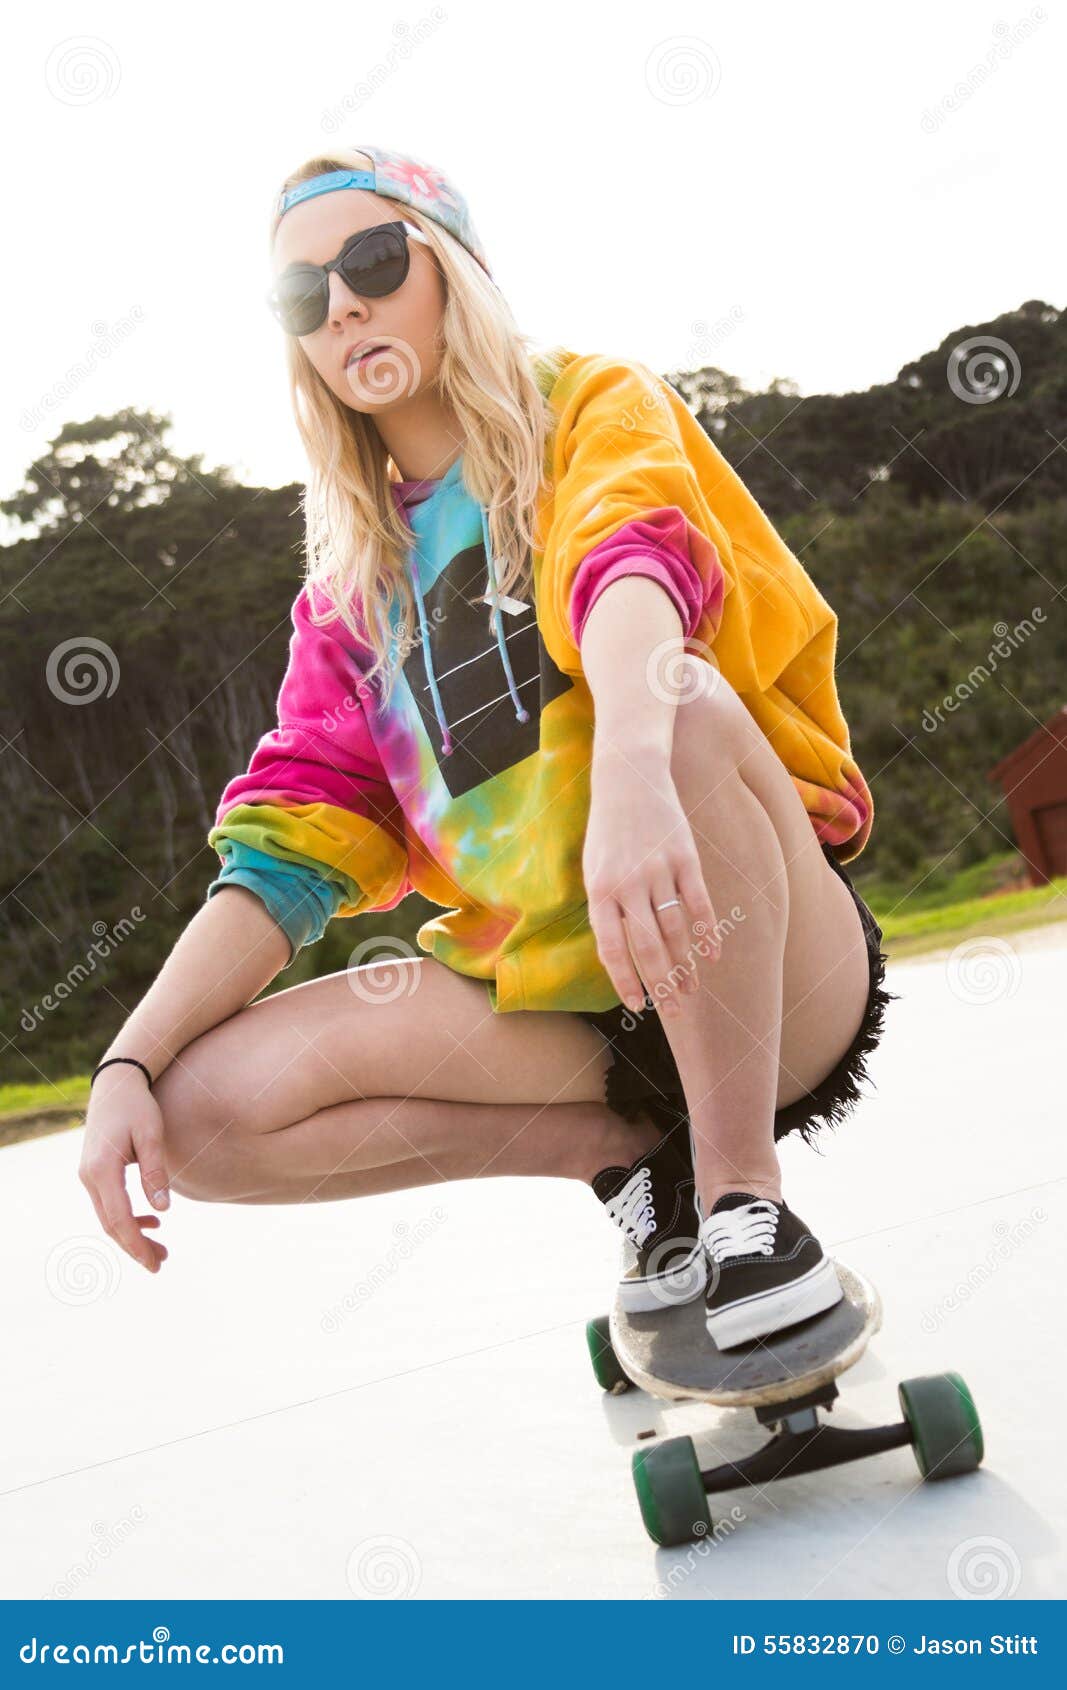 Clam rotatie Huiswerk maken Meisjes Berijdend Skateboard Stock Foto - Image of sweater, blond: 55832870